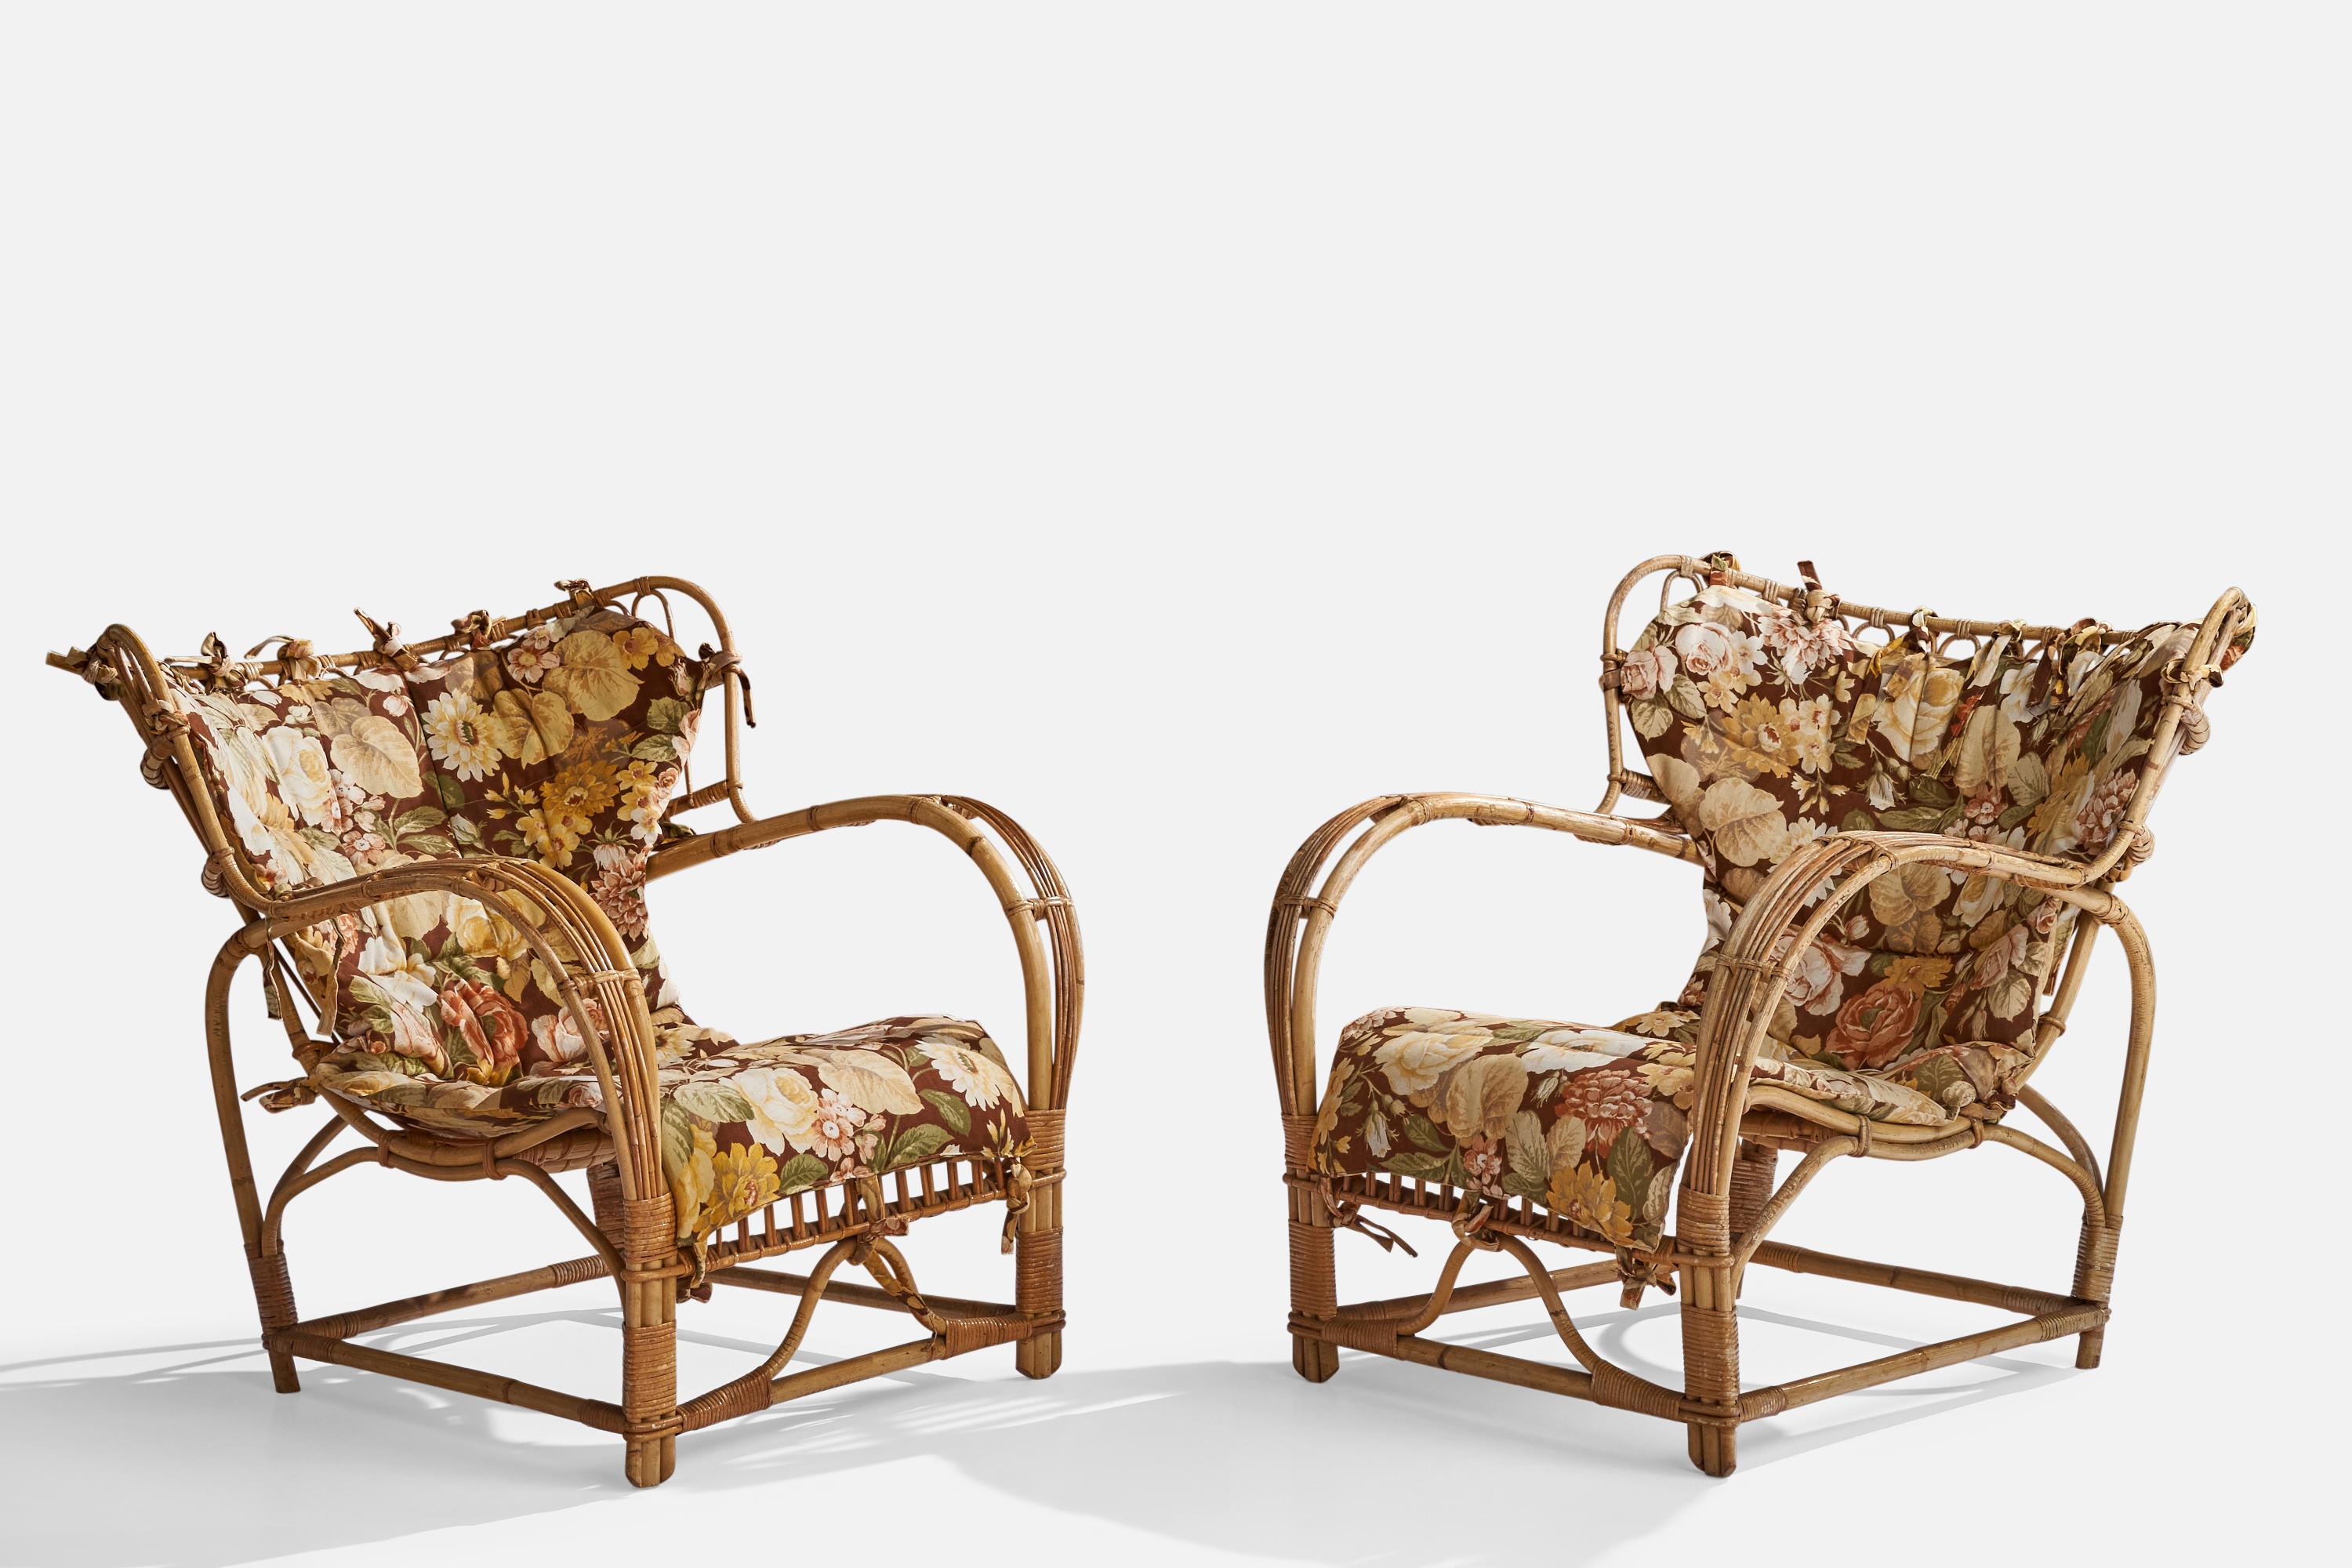 Ein Paar Loungesessel aus geformtem Bambus, Rattan und mit Blumen bedrucktem Stoff, Design: Viggo Boesen, hergestellt in Schweden, 1940er Jahre. 

Sitzhöhe 14.25